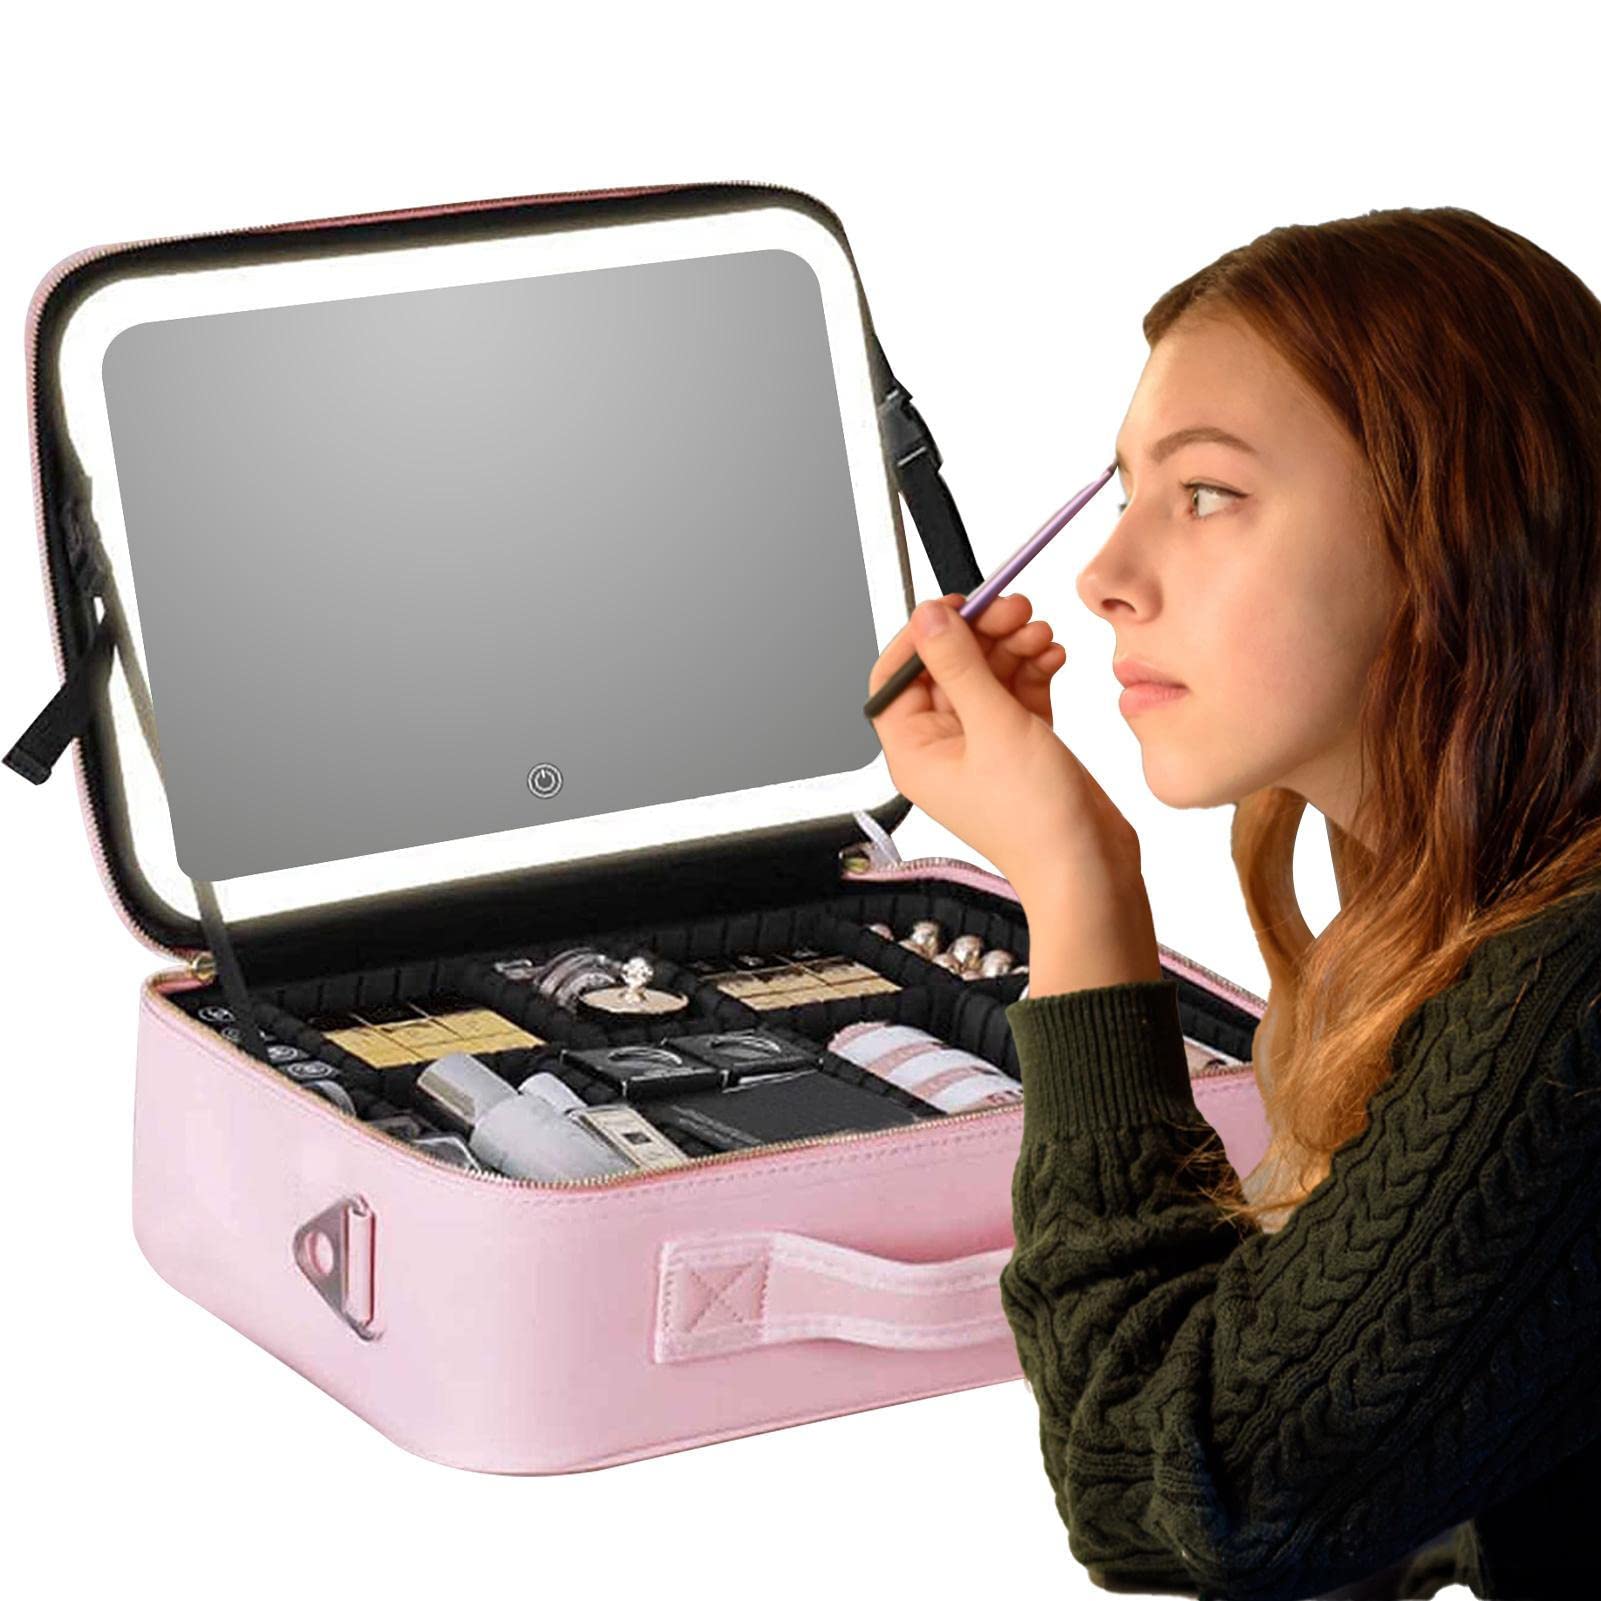 GIMOCOOL Make-up-Tasche, Organizer, Reise-Make-up-Koffer mit beleuchtetem Spiegel, tragbare Kosmetik-Aufbewahrungsbox für Make-up, Schmuck, Toilettenartikel, elektronisches Zubehör